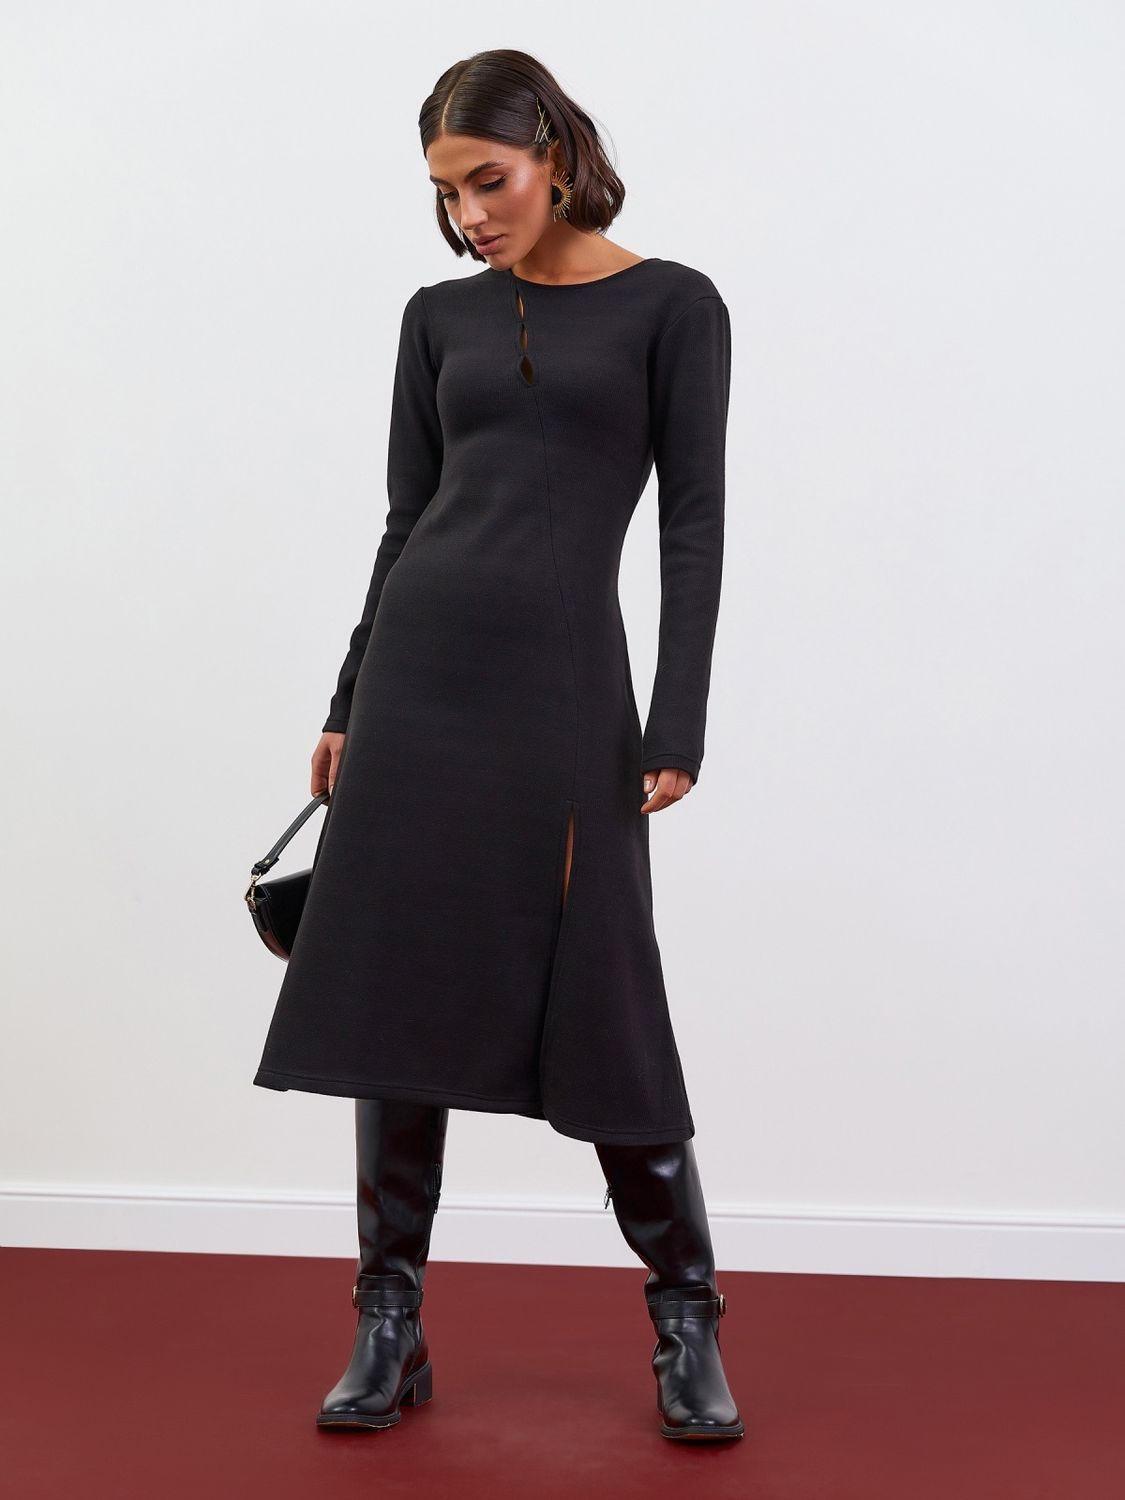 Повсякденна ангорова сукня з розрізом на нозі чорна - фото